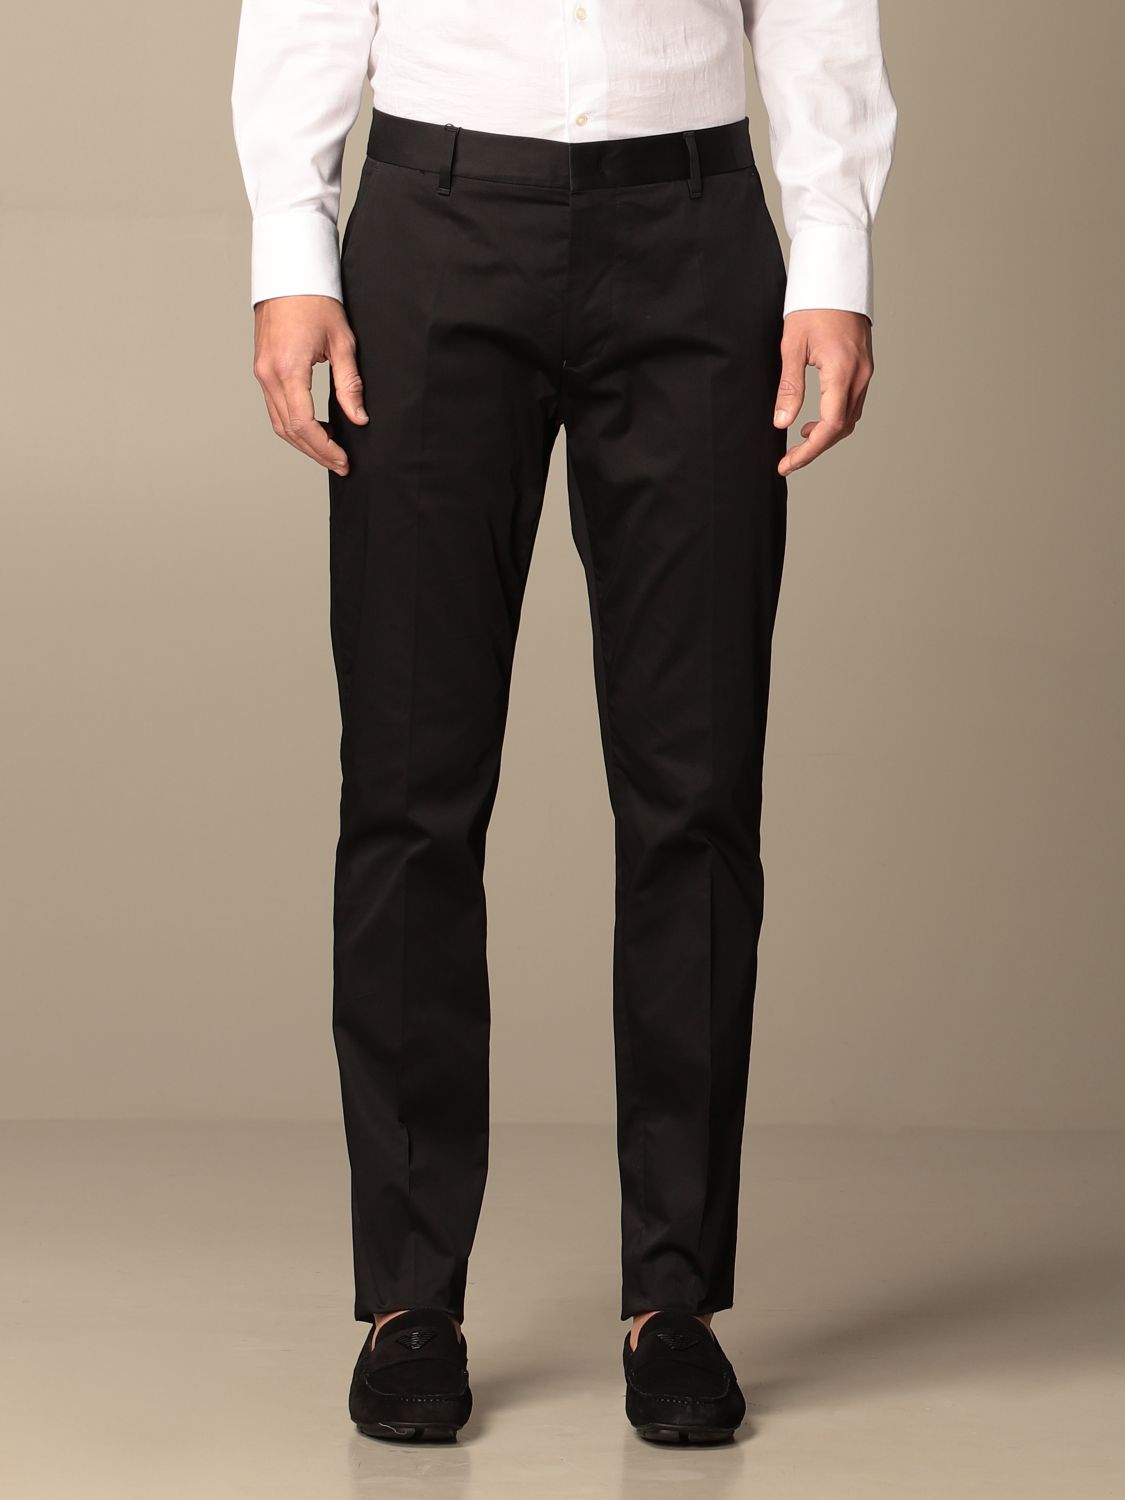 EMPORIO ARMANI: Chino trousers in cotton gabardine - Black | Emporio ...